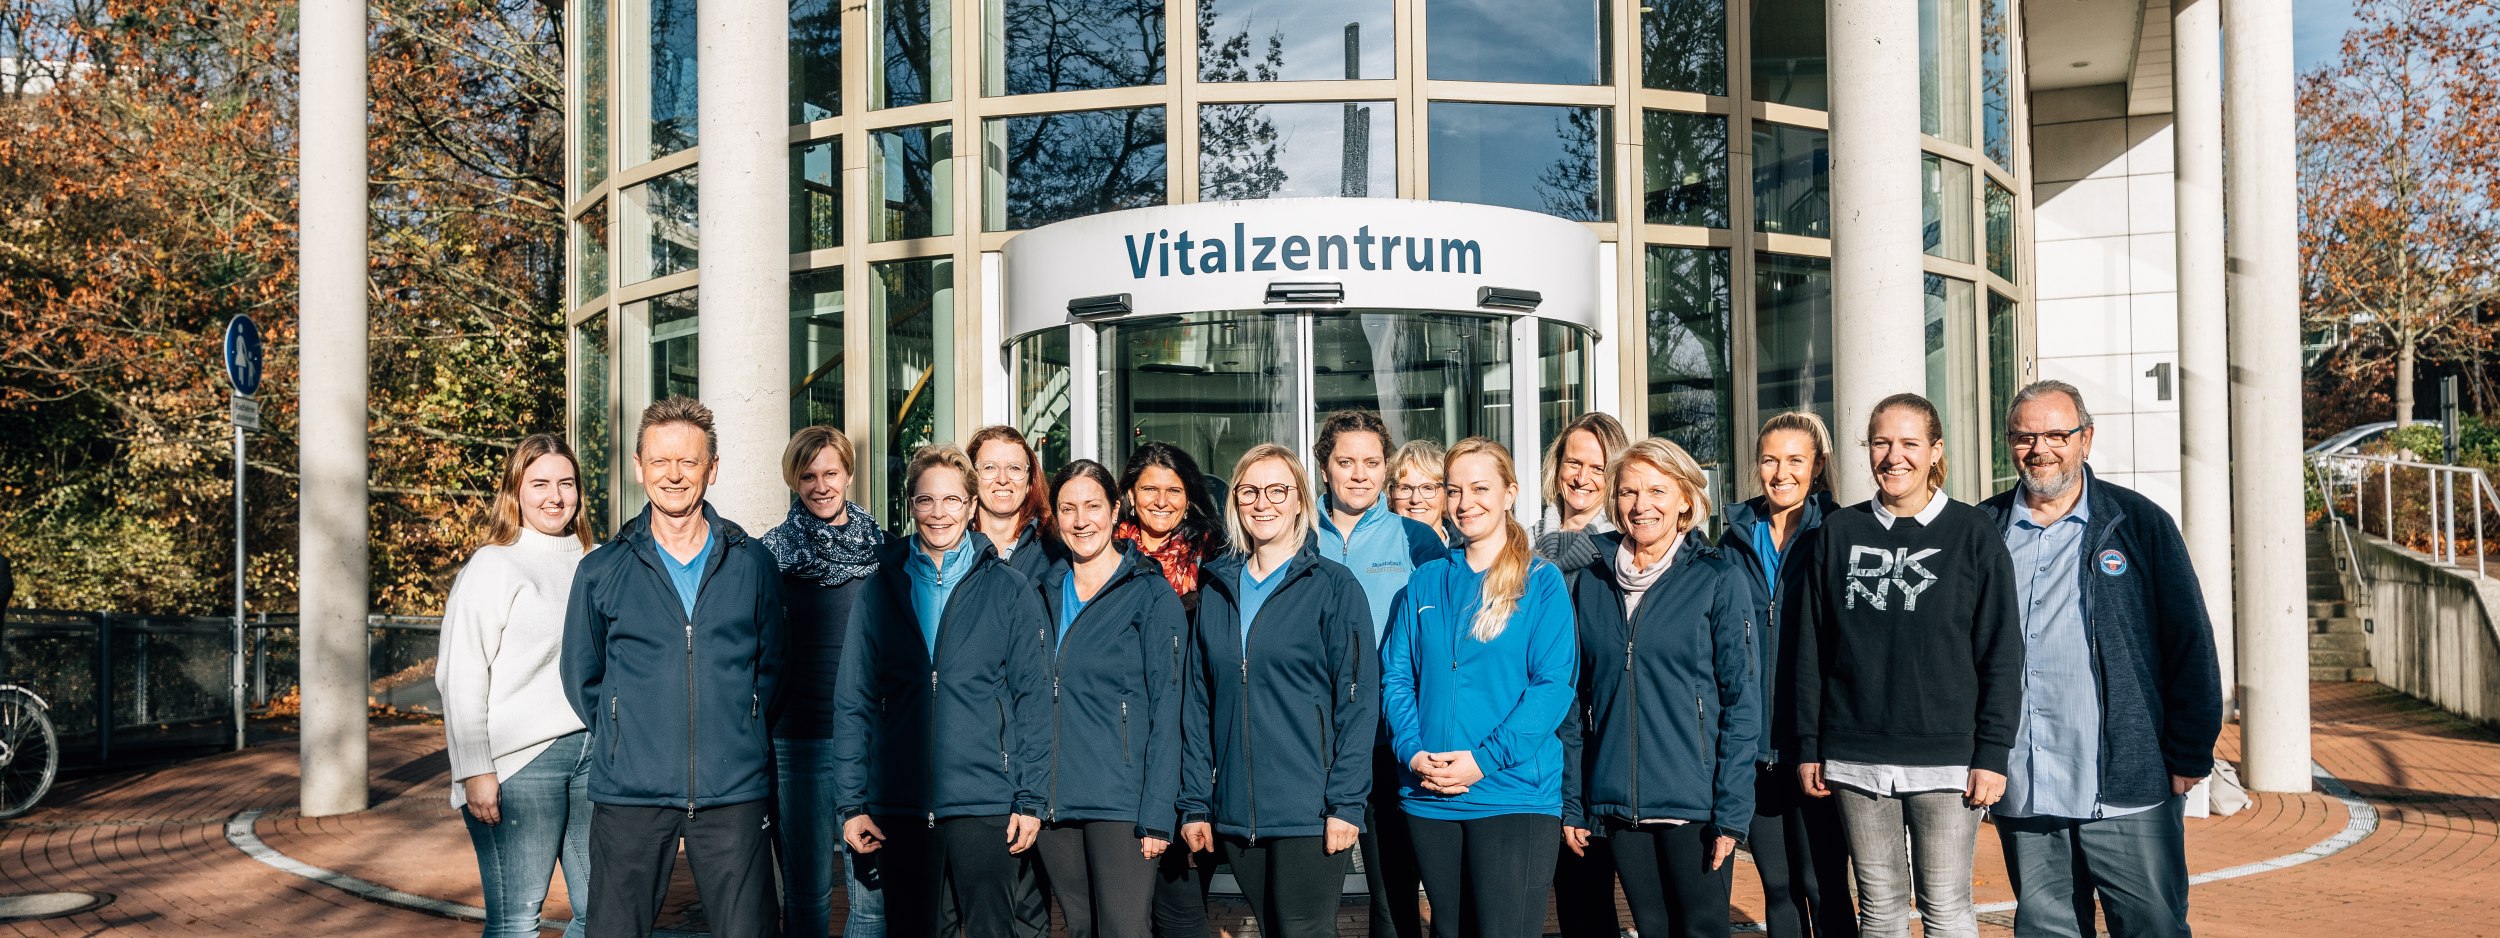 Das Team der Physiotherapie und Präventionssport unterstützt Sie in Ihrer Gesundheit, © Stadt Bad Salzuflen/M. Adamski